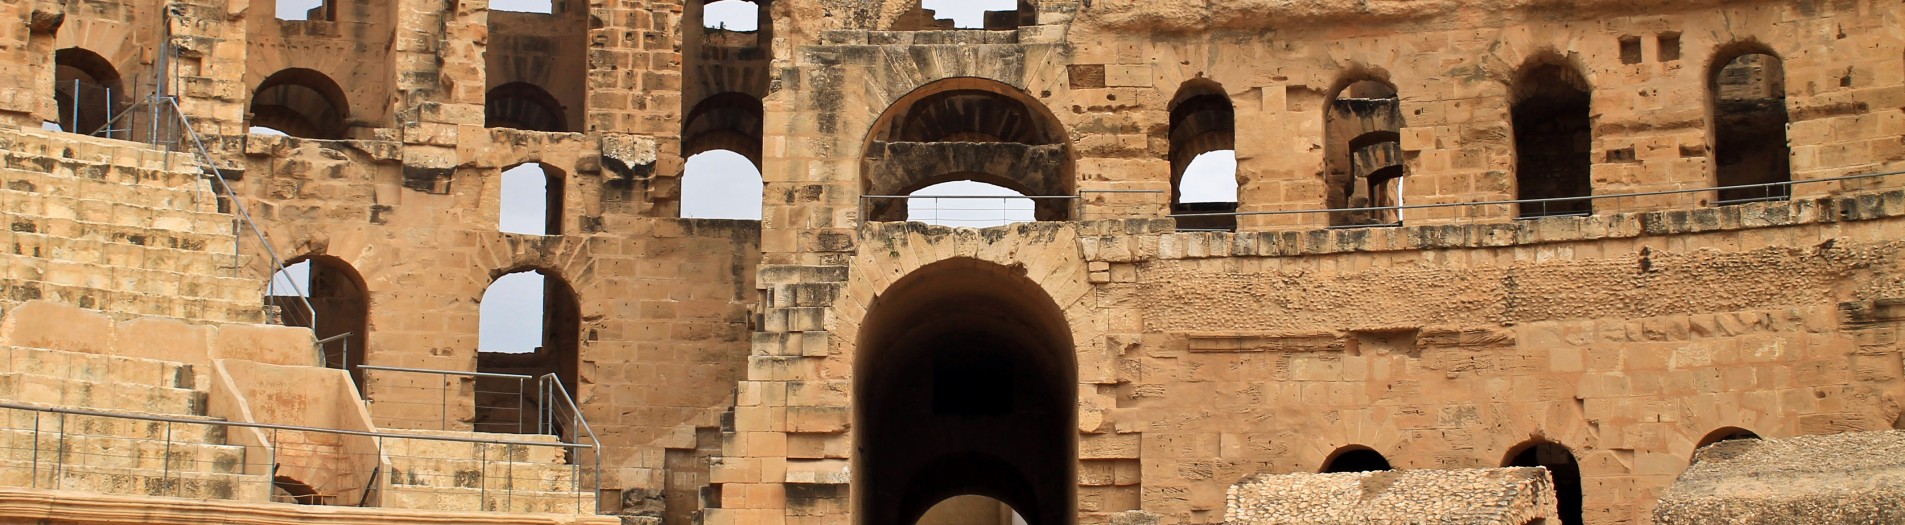 Les amphithéâtres romains en Tunisie